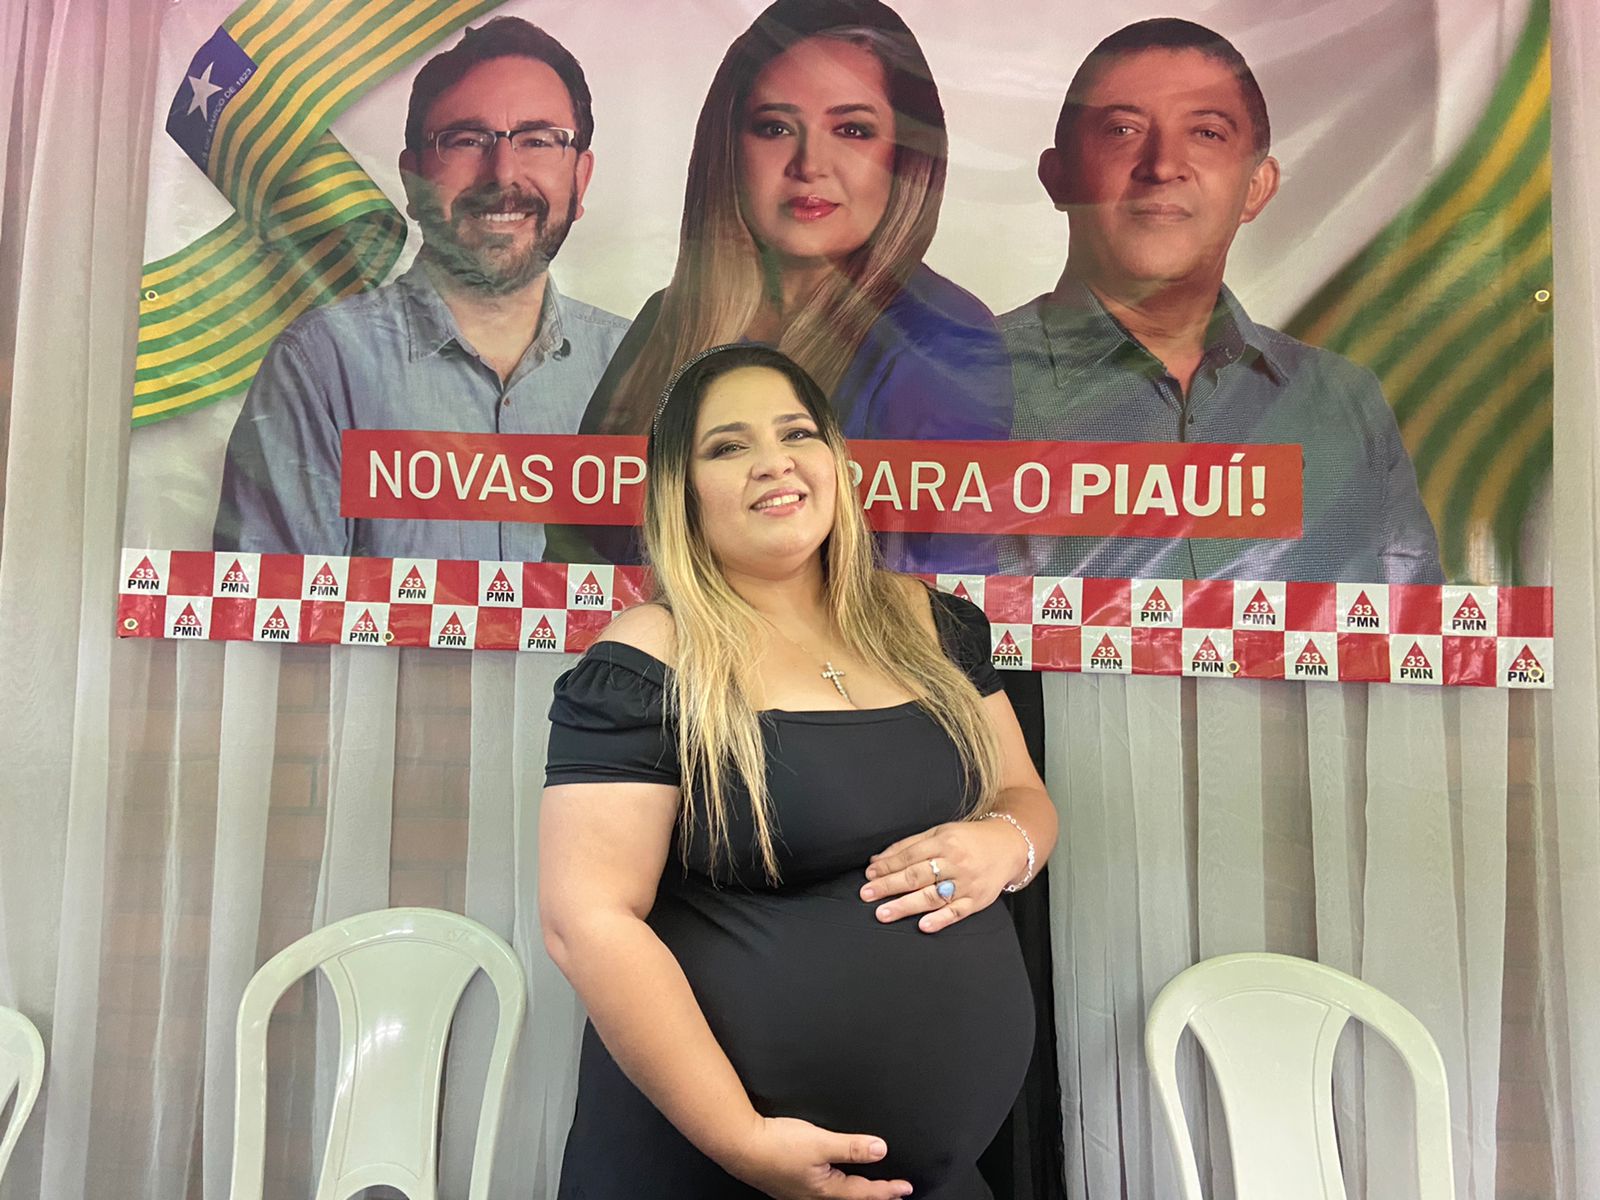 Ravenna Castro disse que vai parir um novo Piauí. Crédito: Lucrécio Arrais.